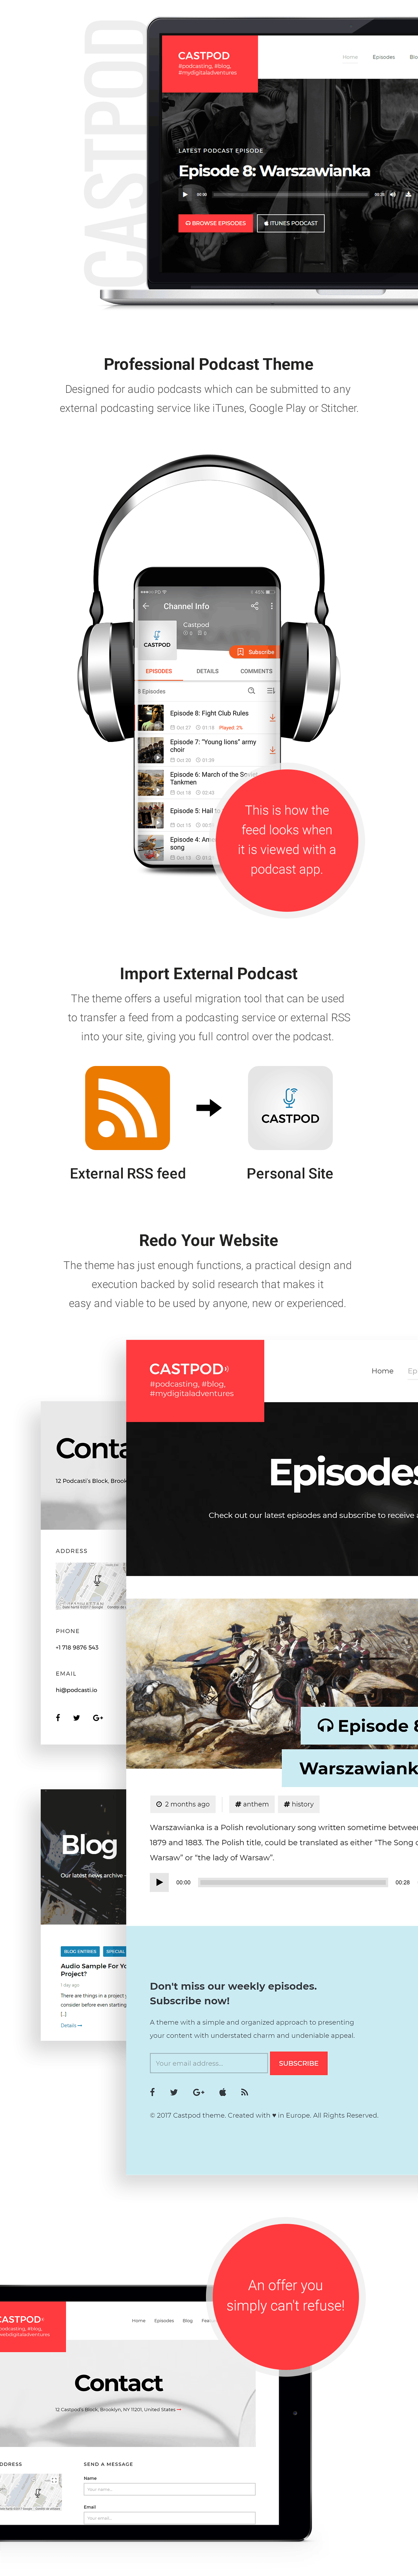 Castpod est un thème WordPress professionnel conçu pour les podcasts audio, qui peut être envoyé sur tout service de podcasting externe tel qu'iTunes, Google Play ou Stitcher.